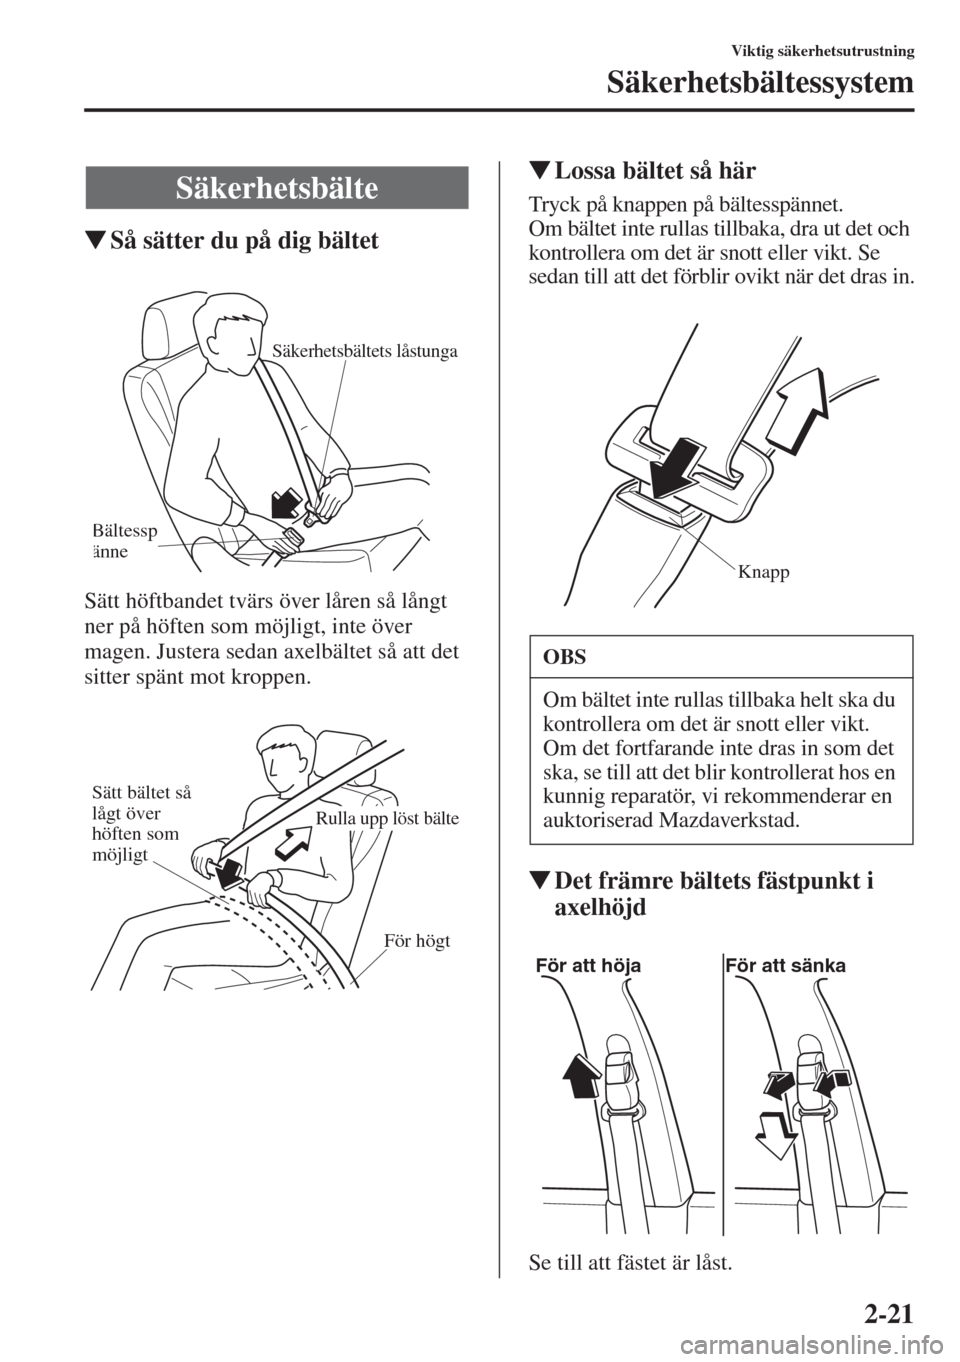 MAZDA MODEL CX-5 2015  Ägarmanual (in Swedish) 2-21
Viktig säkerhetsutrustning
Säkerhetsbältessystem
�WSå sätter du på dig bältet
Sätt höftbandet tvärs över låren så långt 
ner på höften som möjligt, inte över 
magen. Justera sed